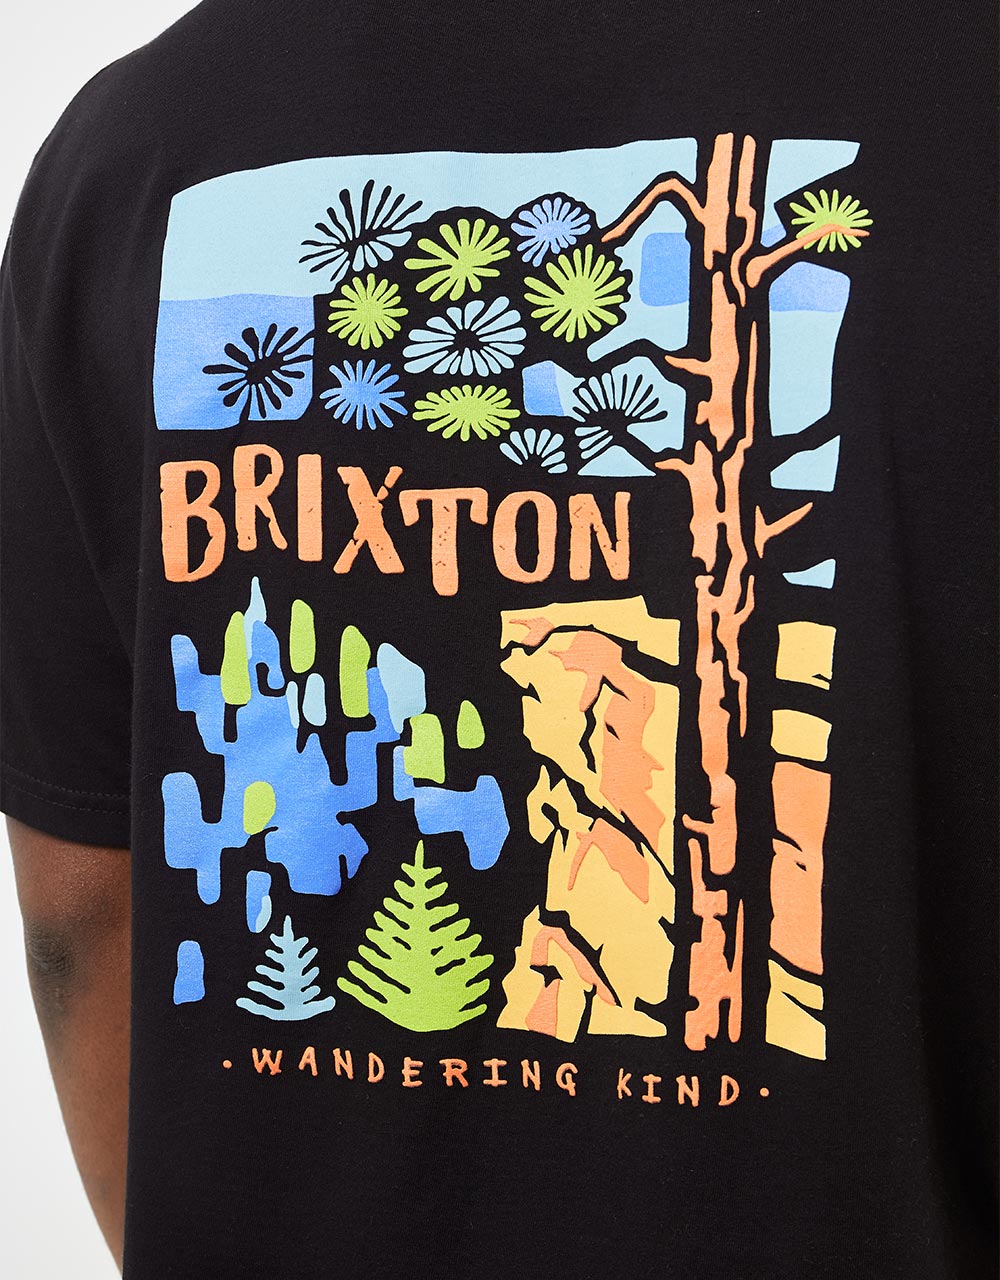 Brixton Highview Standard Fit T-Shirt - Black